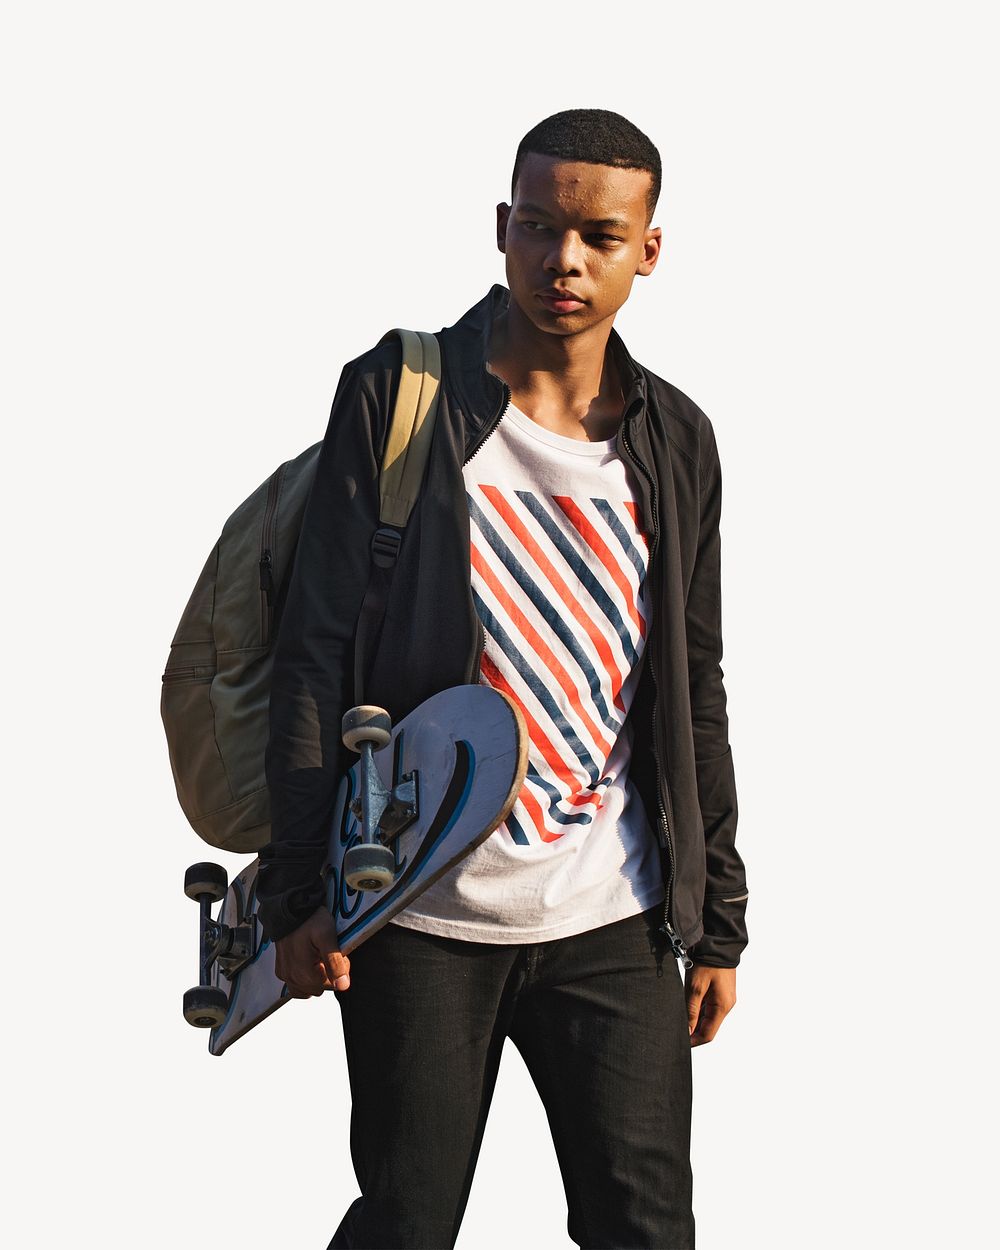 Teenage boy holding skateboard, isolated image